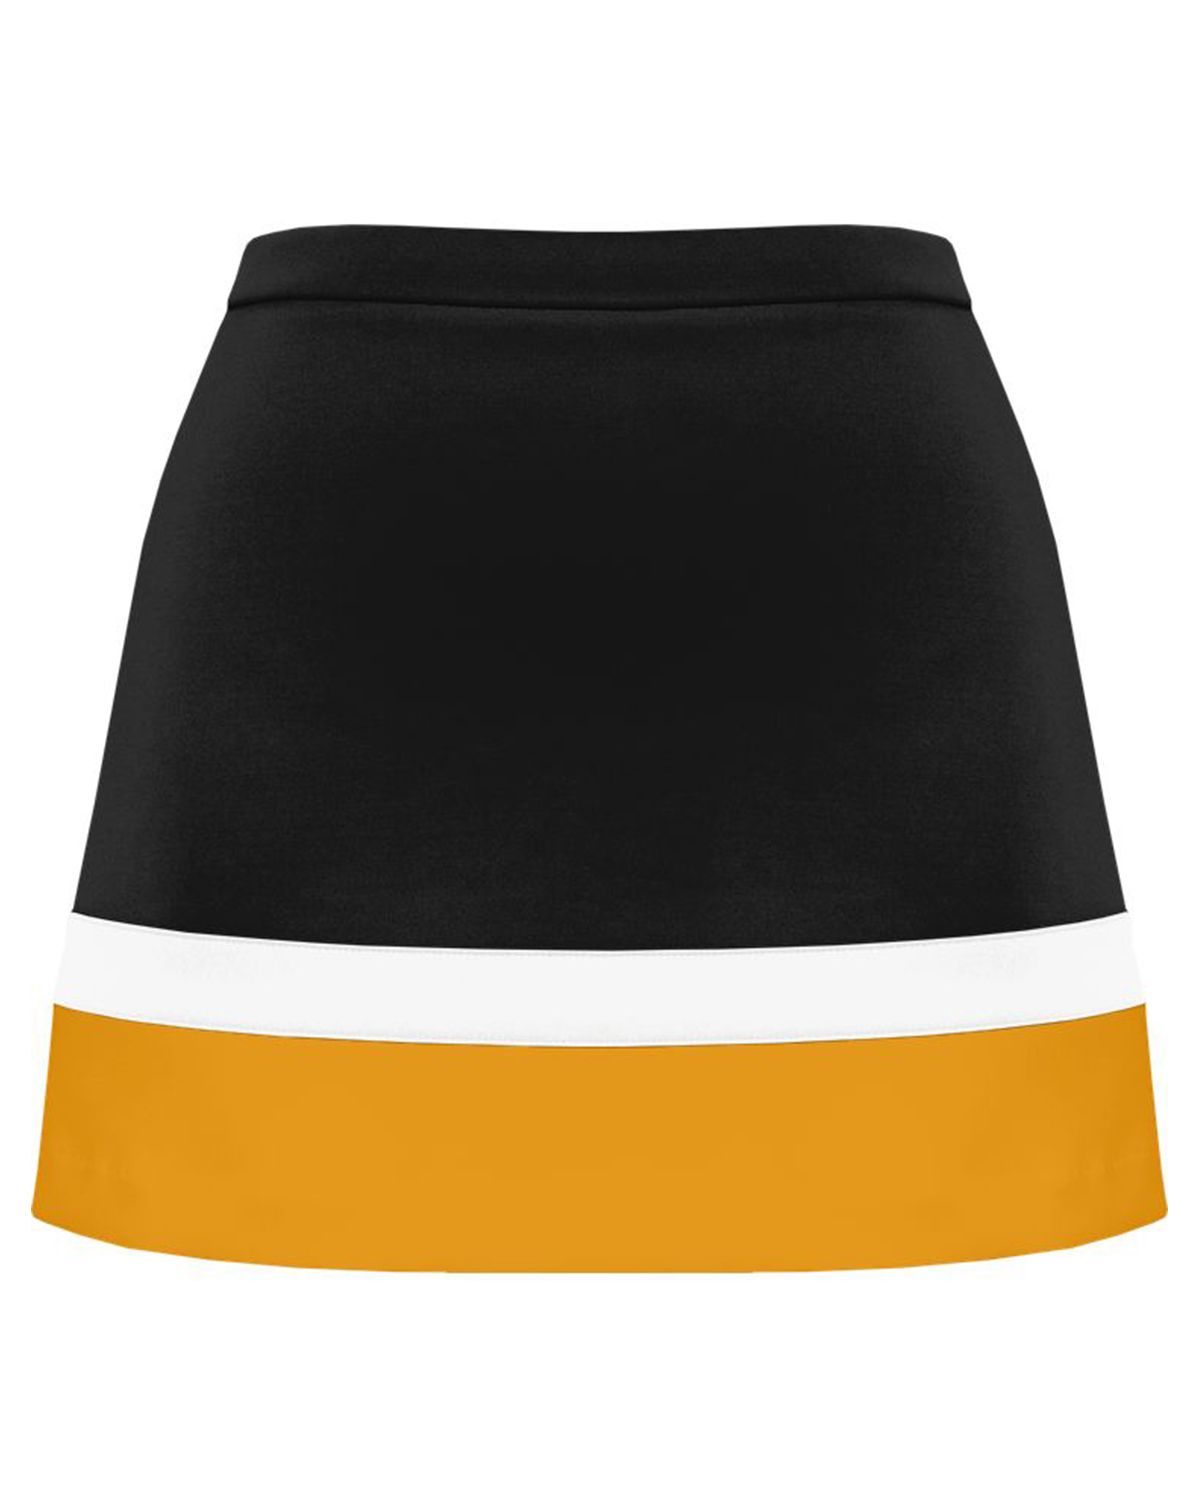 yellow champion skirt